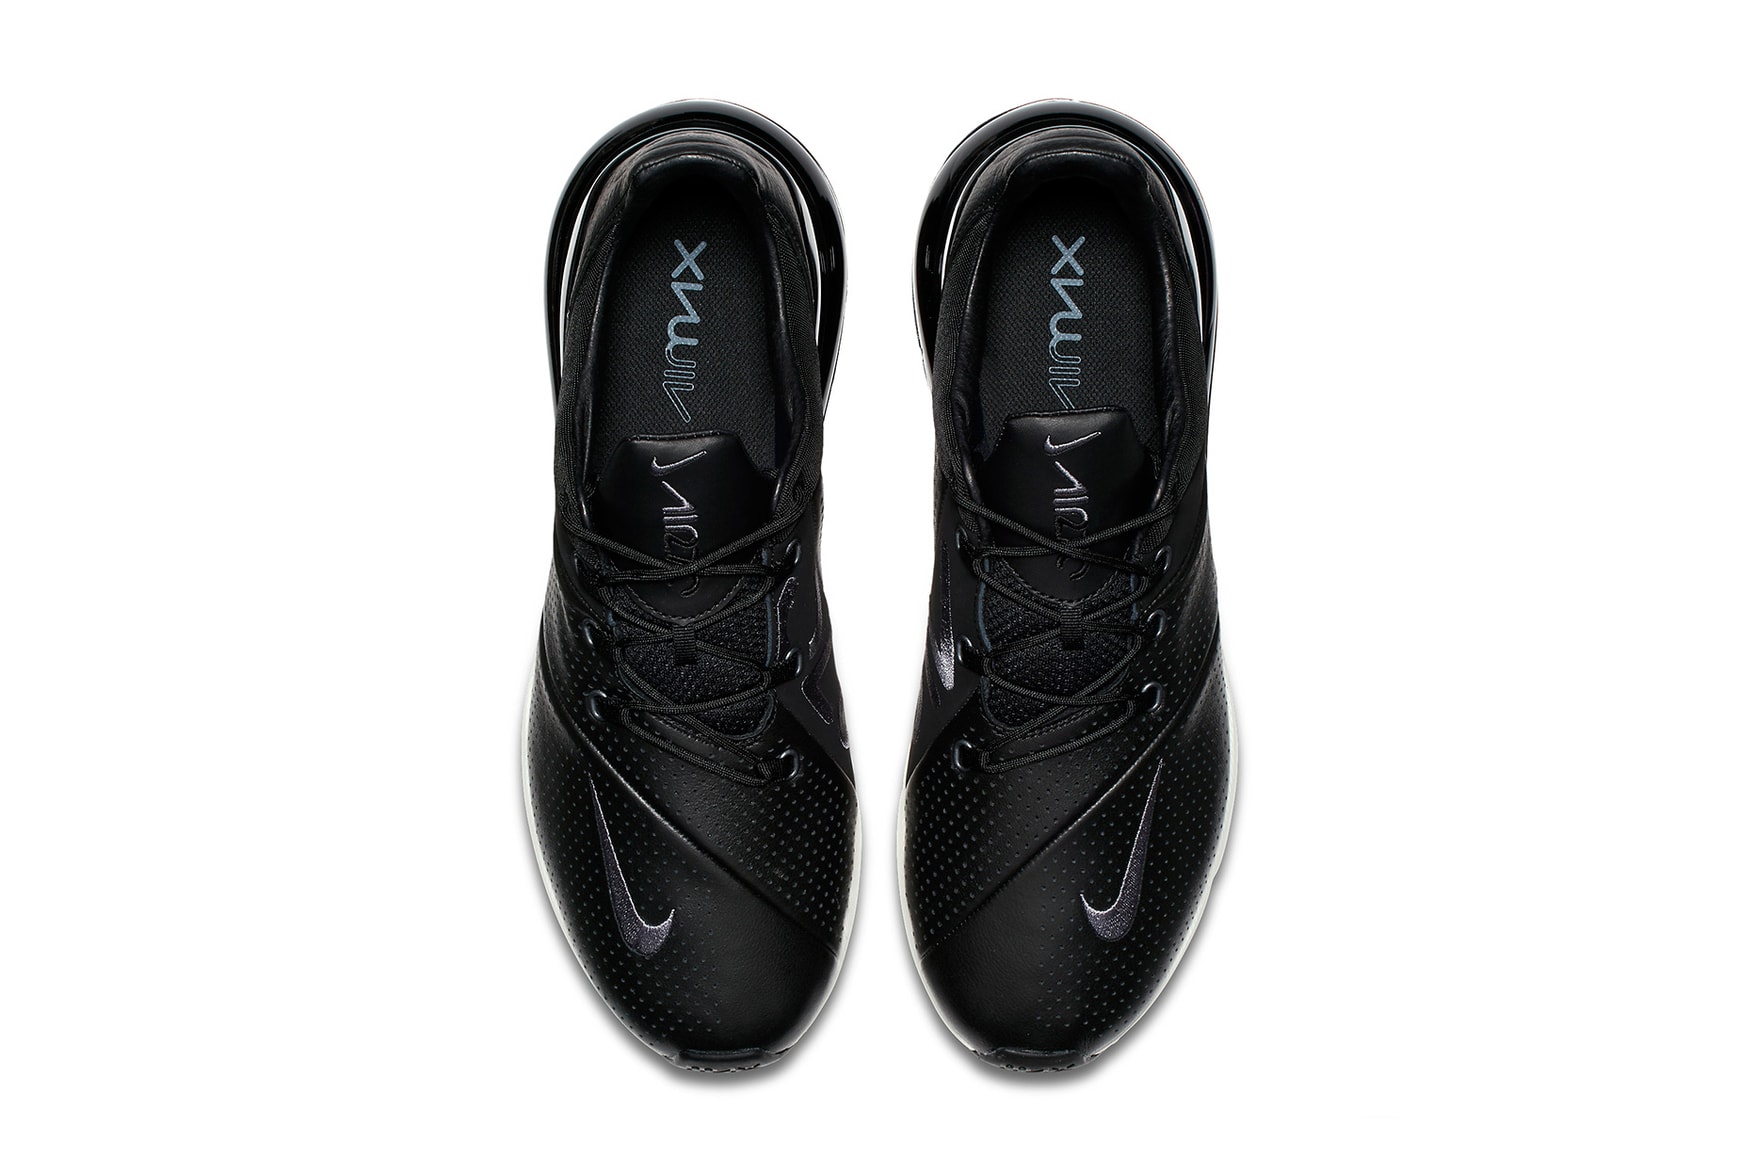 Nike Air Max 270 Premium String Black july 2018 release date info drop sneakers shoes footwear